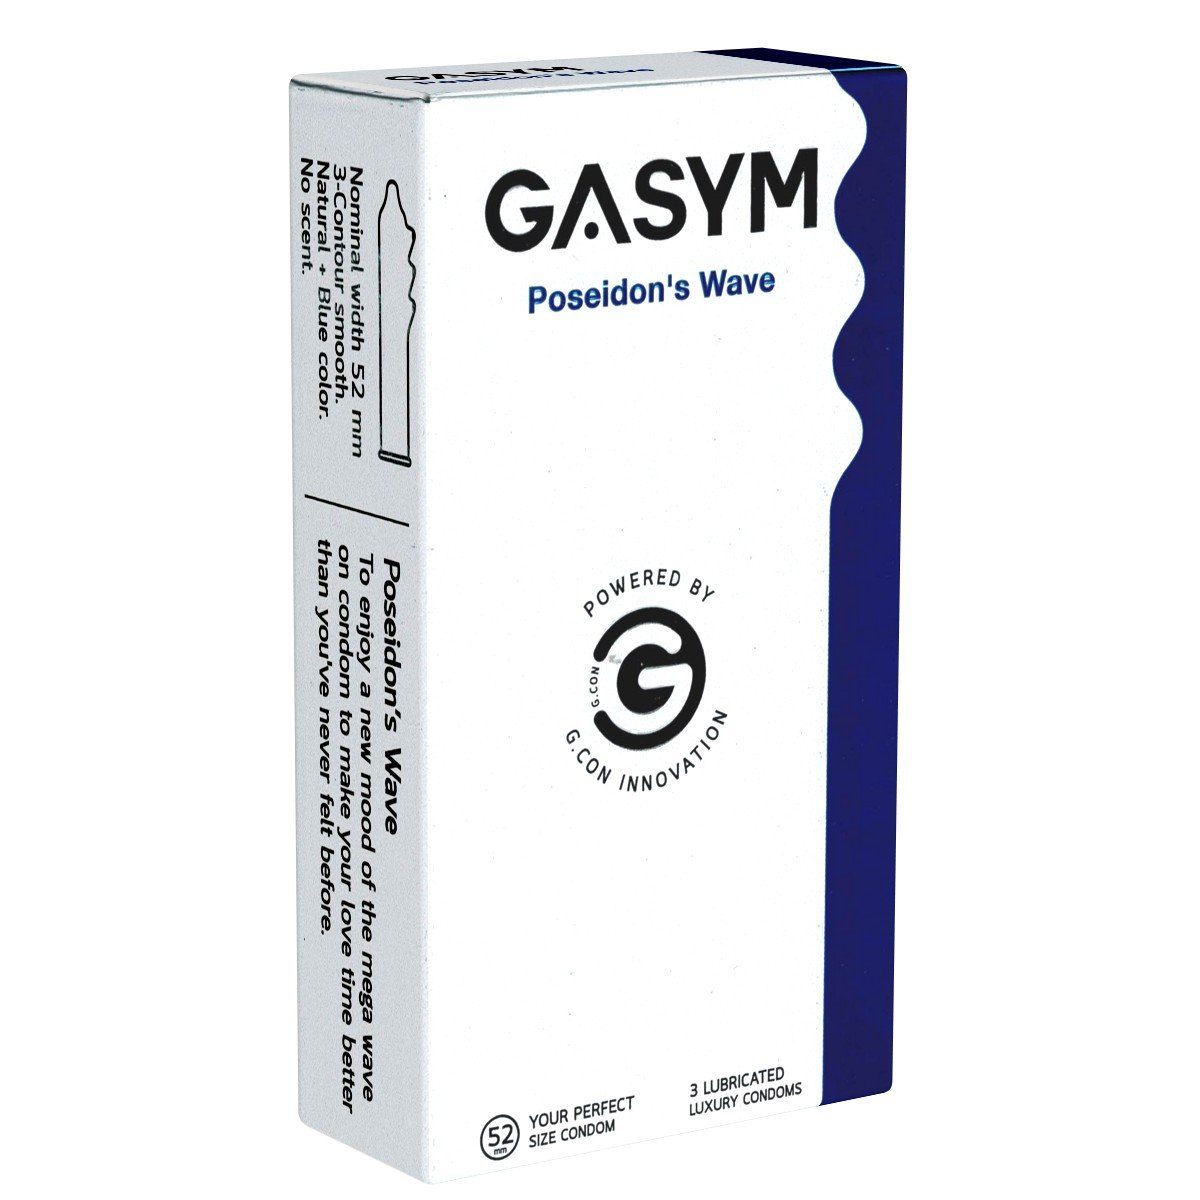 GASYM Kondome Poseidon's Wave Packung mit, 12 St., aufregende & stimulierende Kondome mit Lust-Wellen